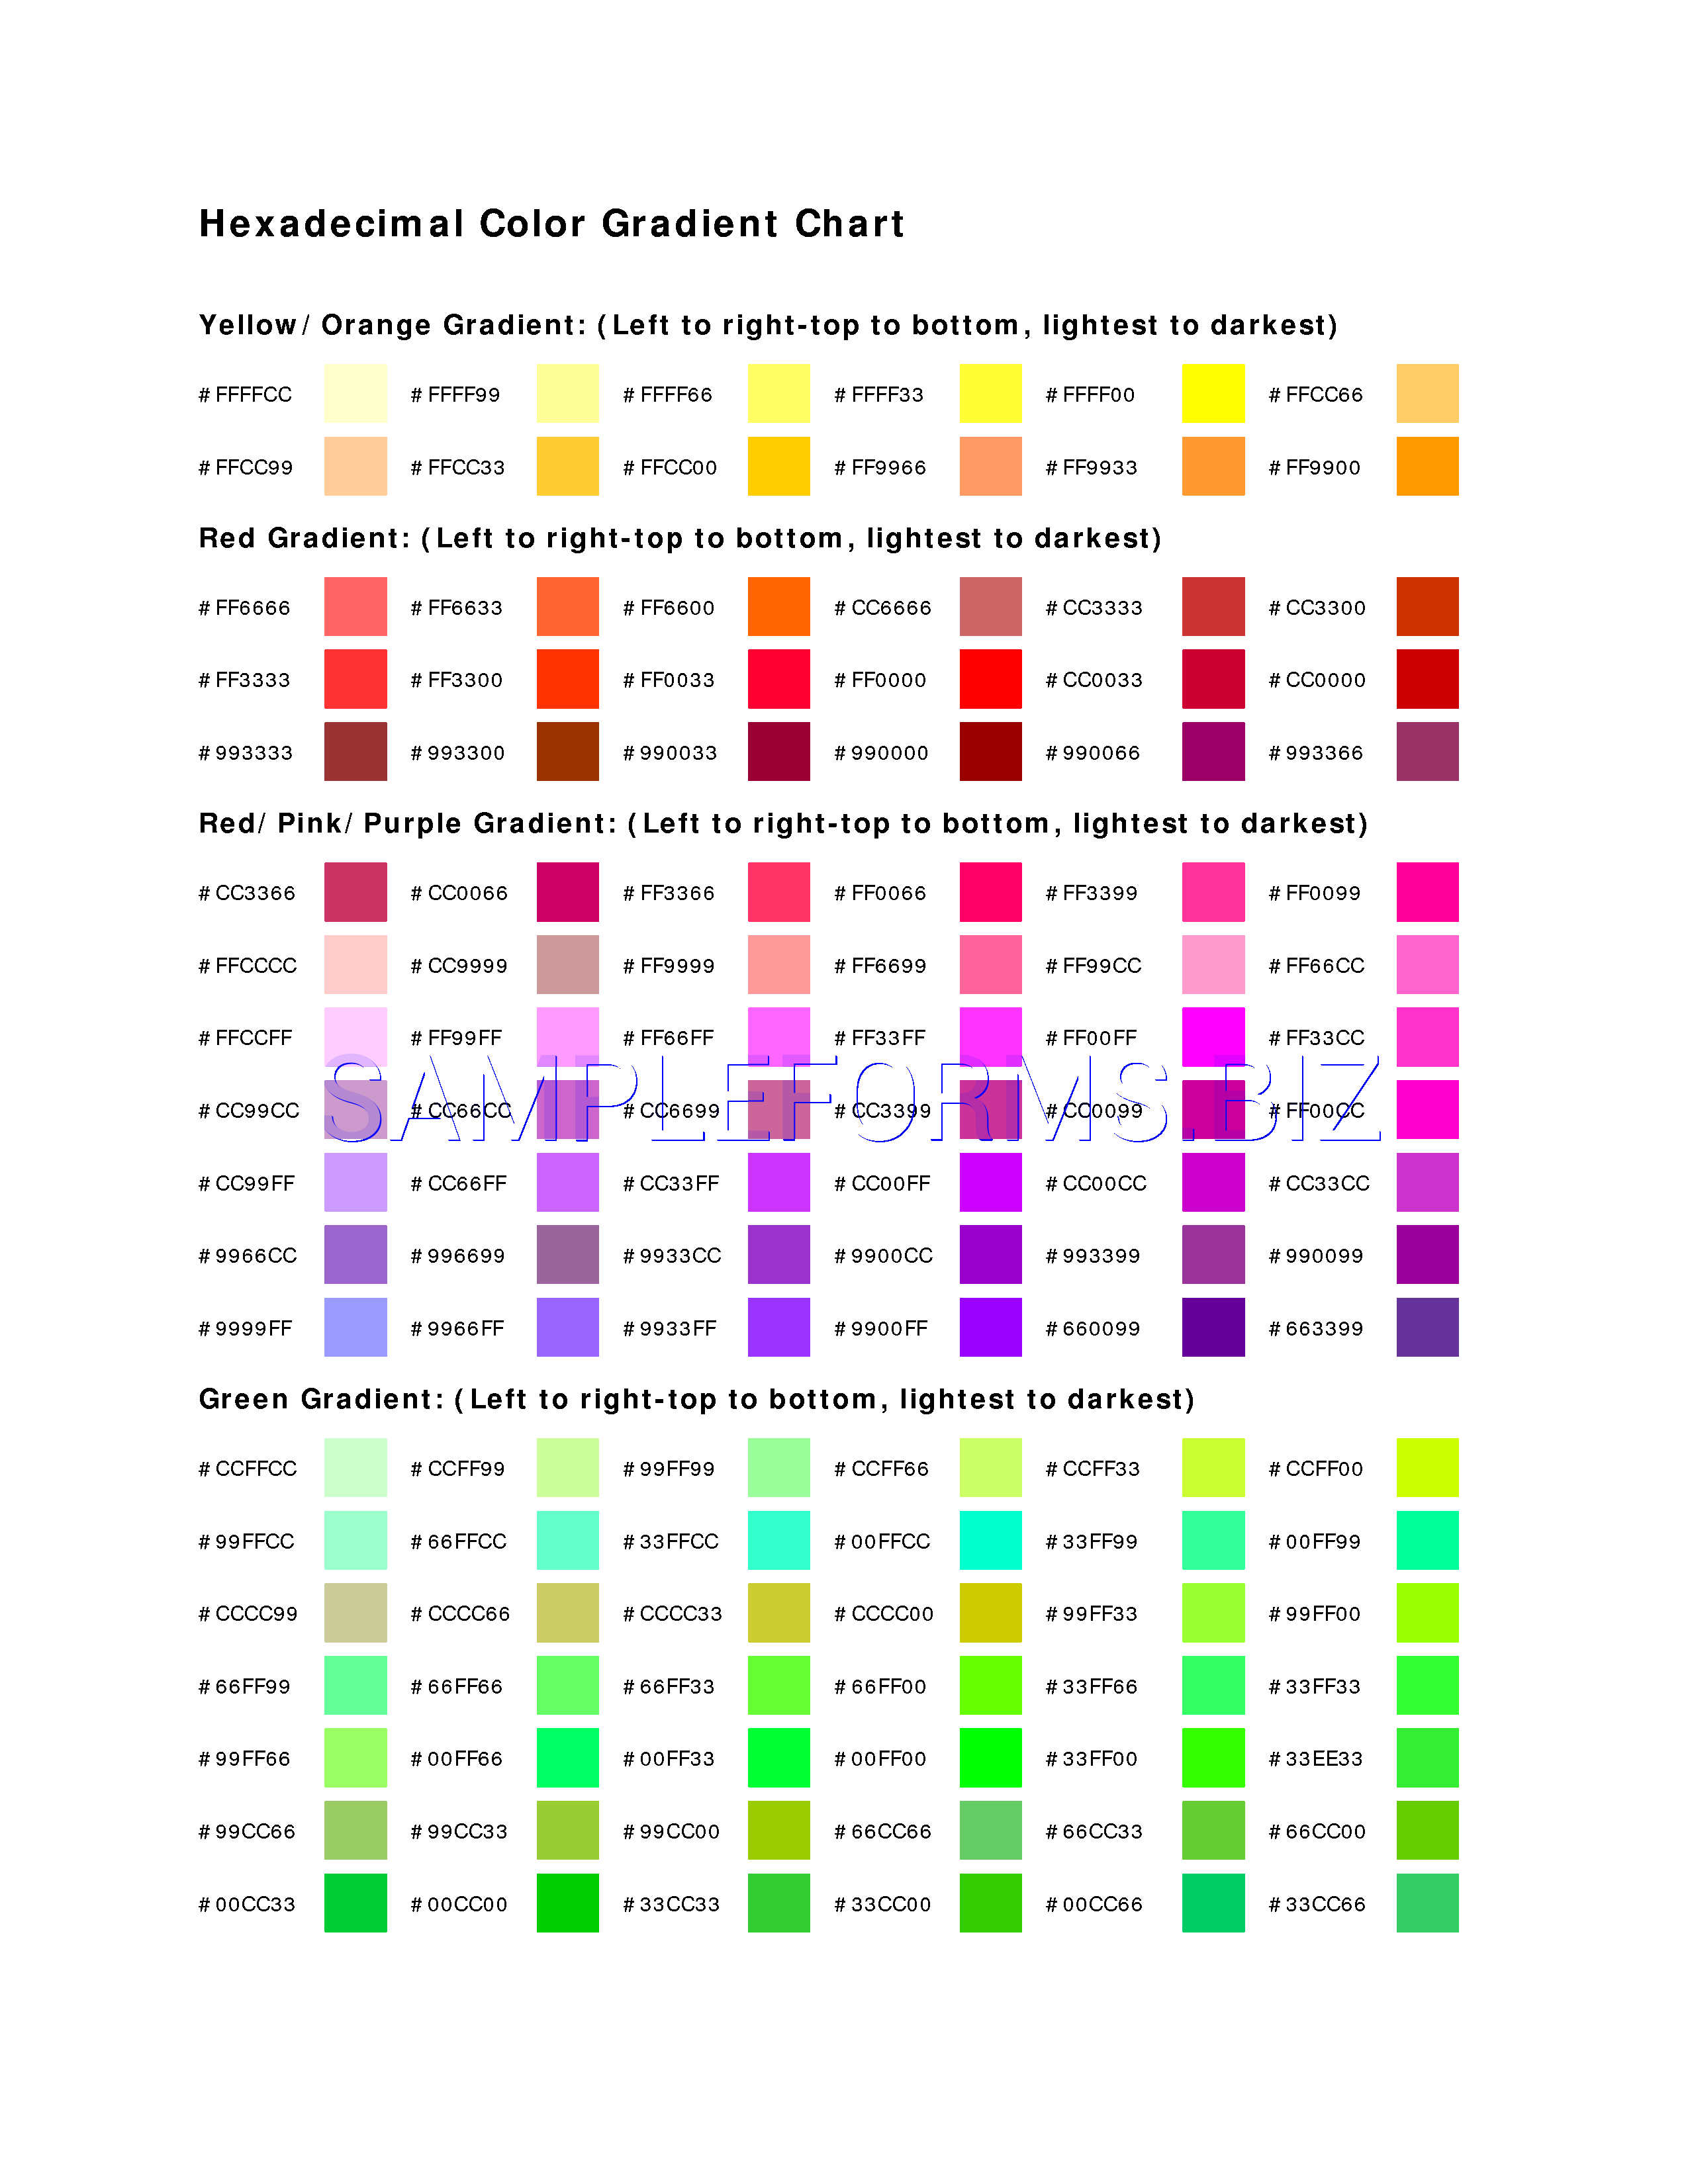 Color Gradient Chart